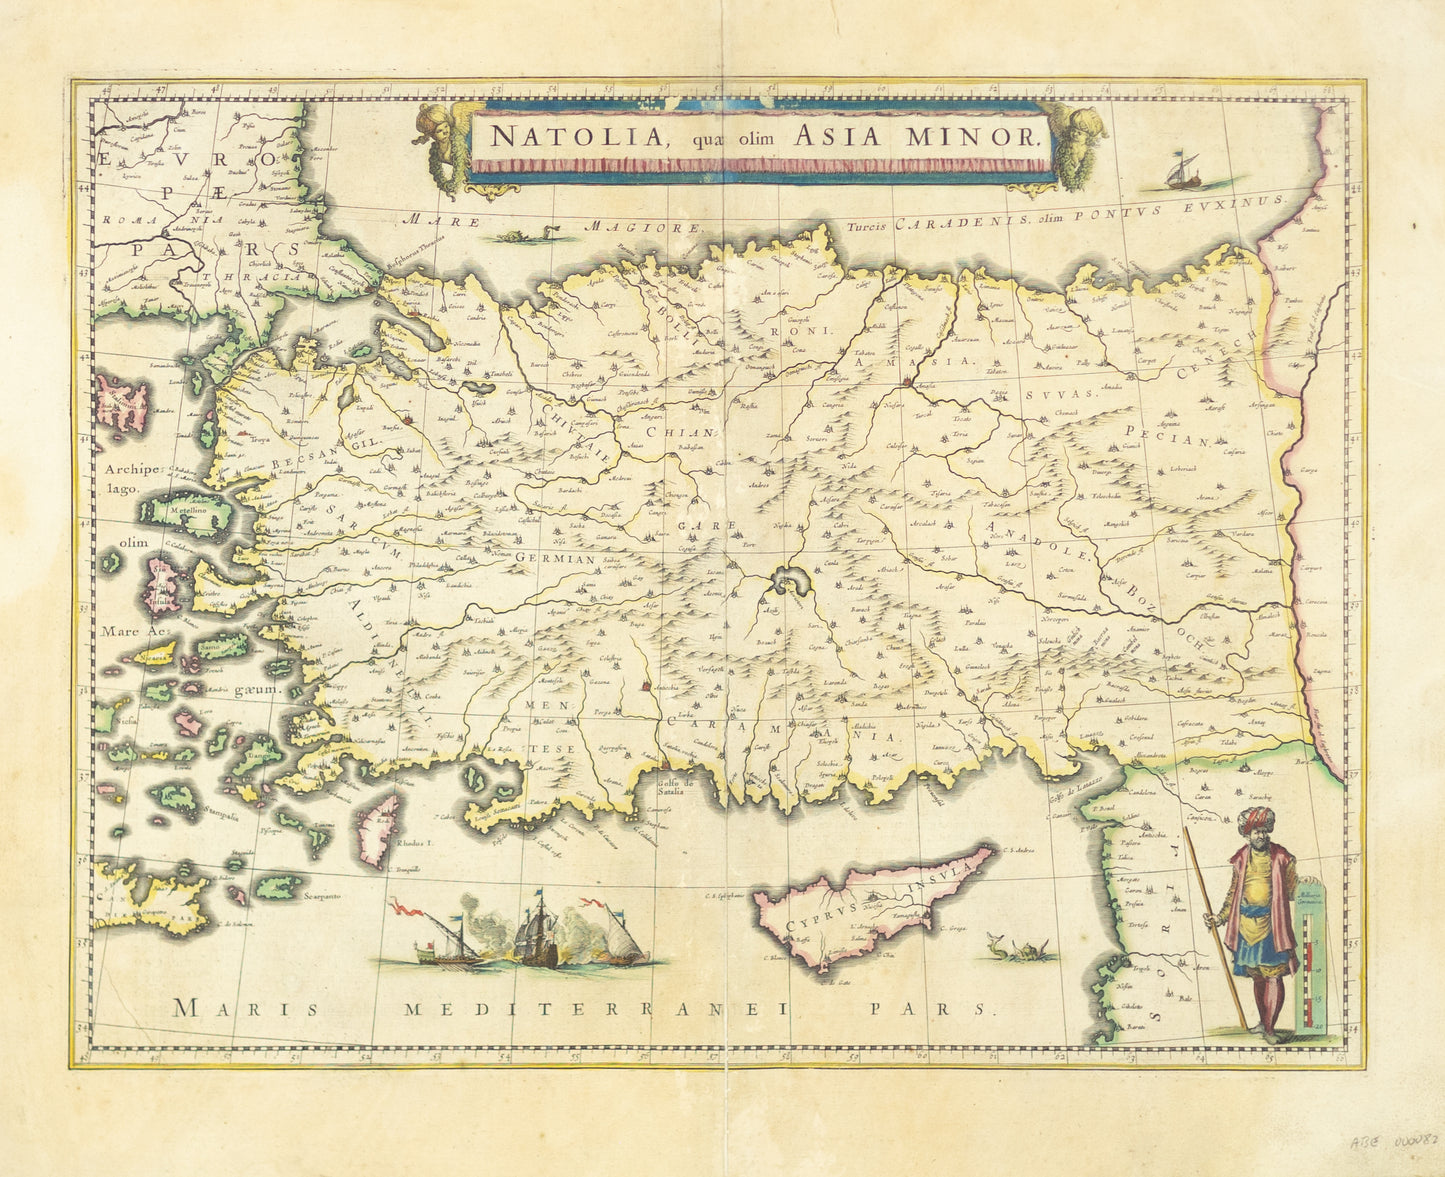 Blaeu, Willem. Natolia, qua olim Asia Minor. Amsterdam: 1647